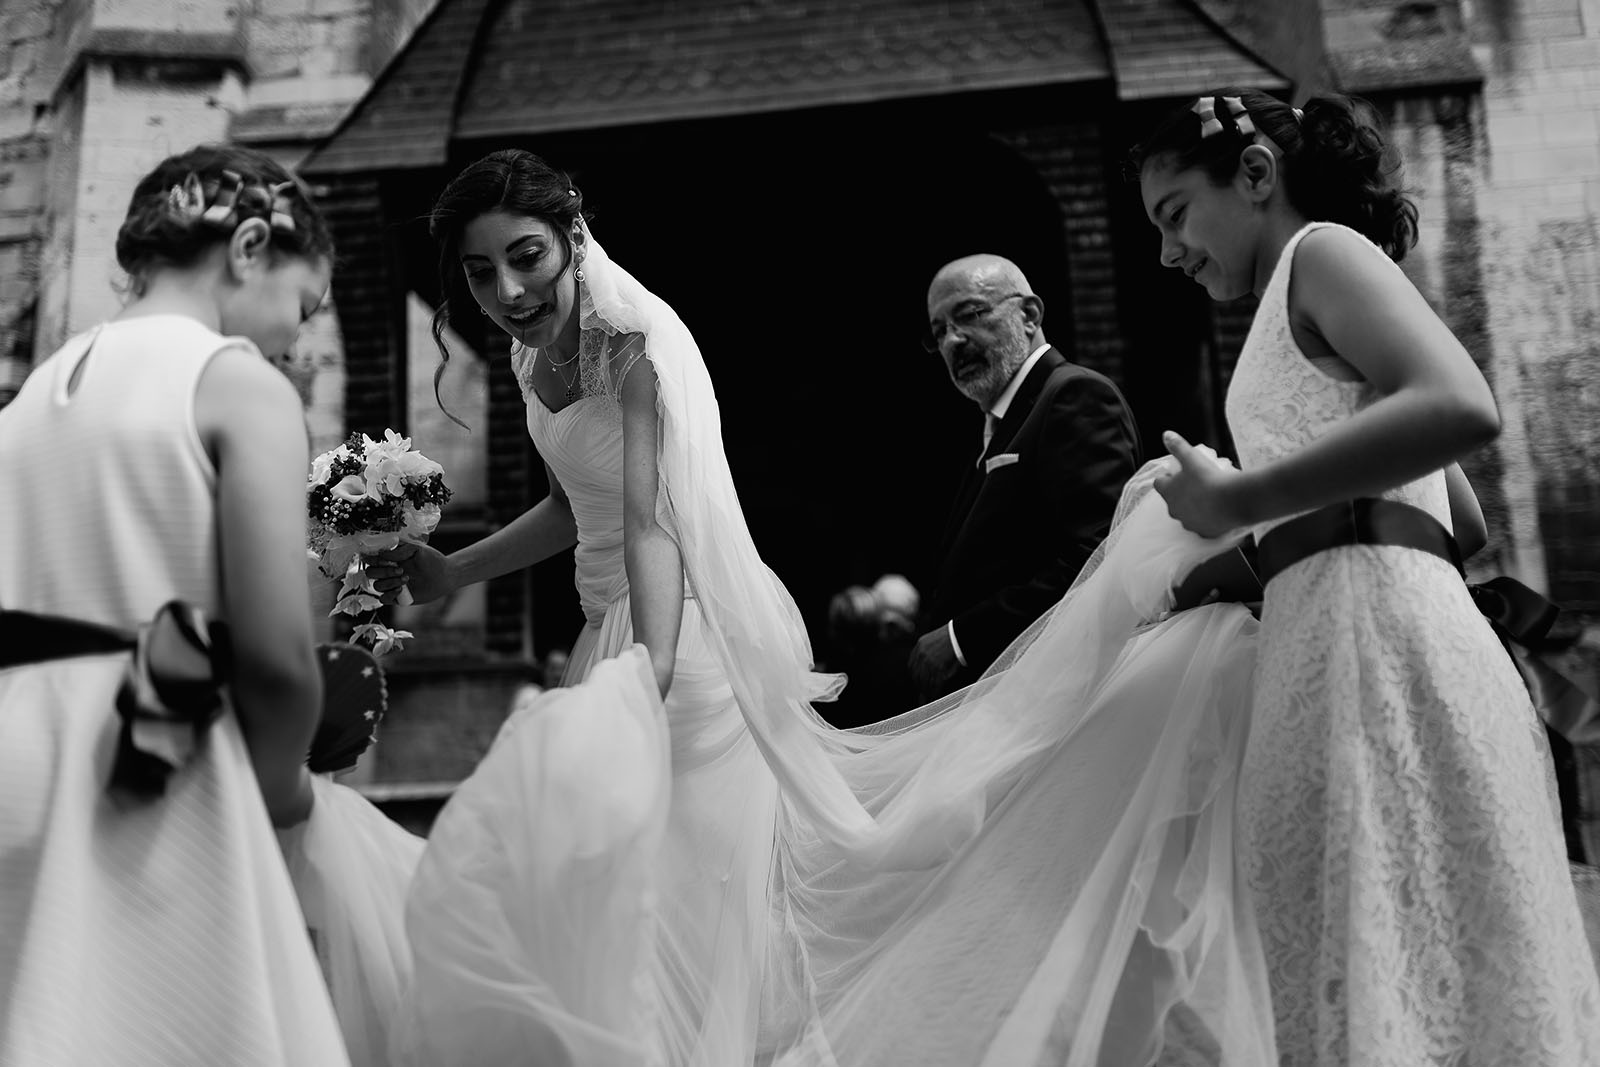 Mariage au Manoir de Corny en Normandie. Les demoiselles d'honneur remettent correctement la robe de la mariée